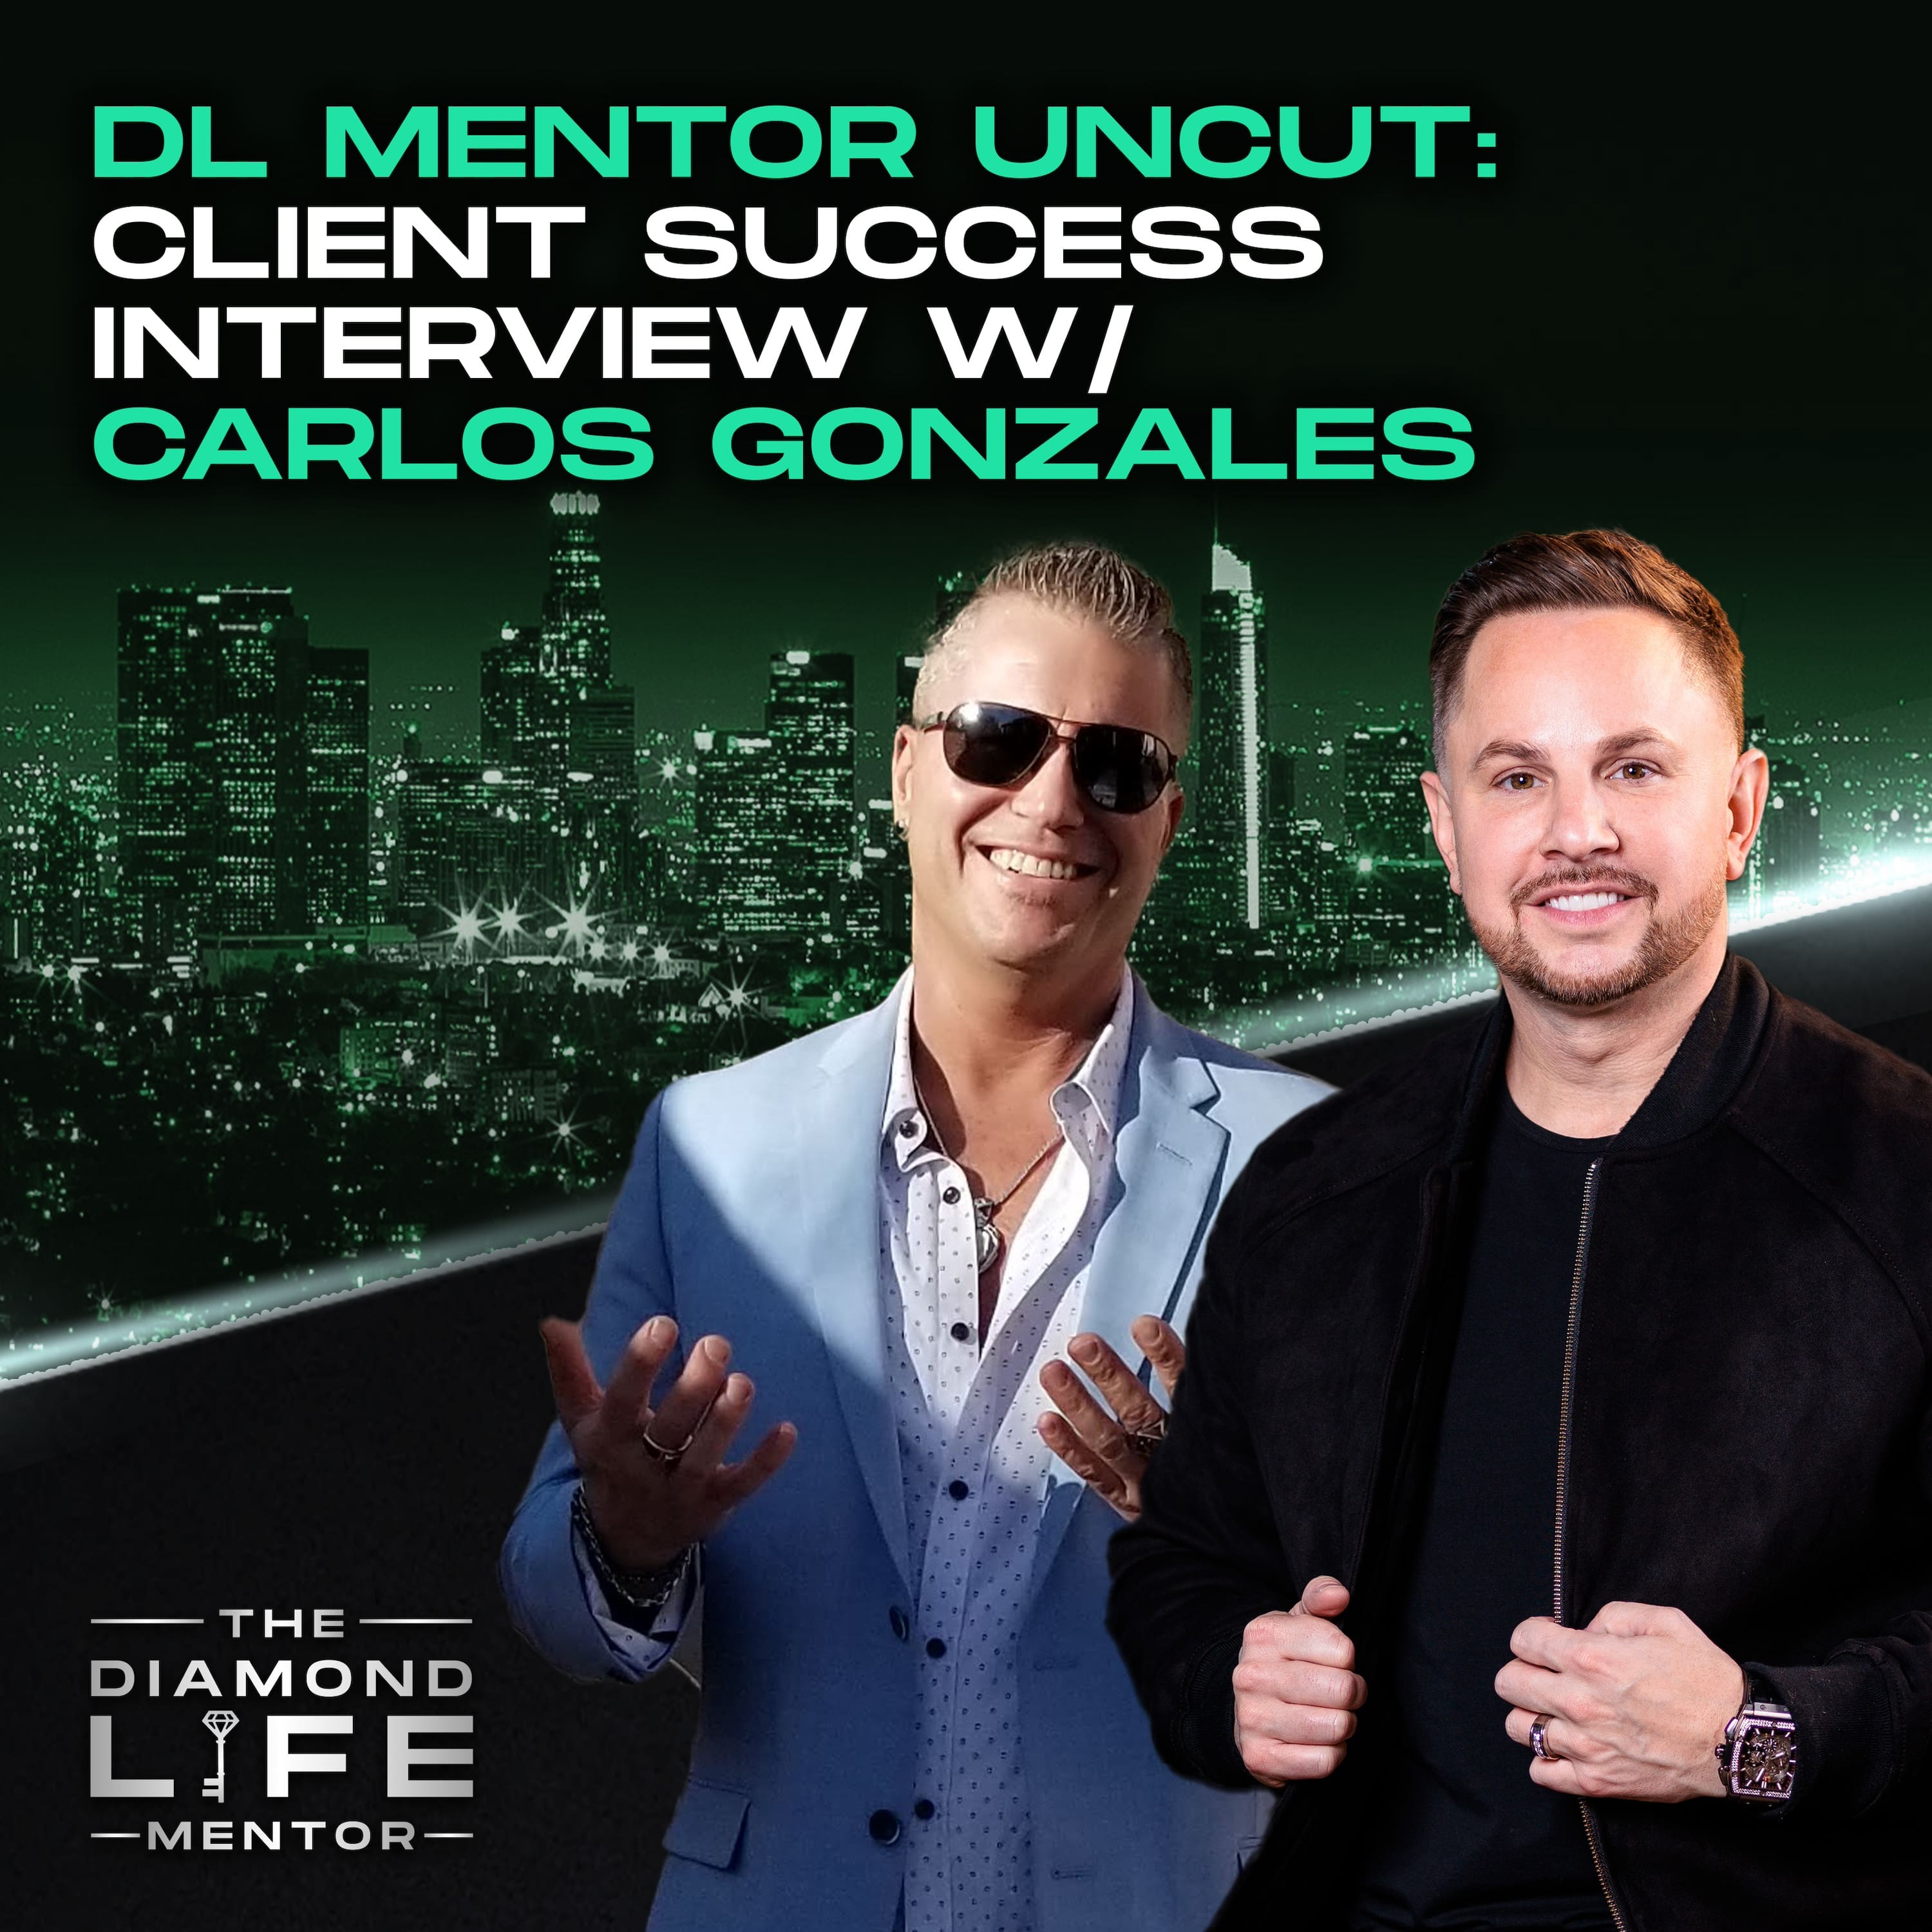 DL Mentor Uncut: Client Success Interview w/ Carlos Gonzales